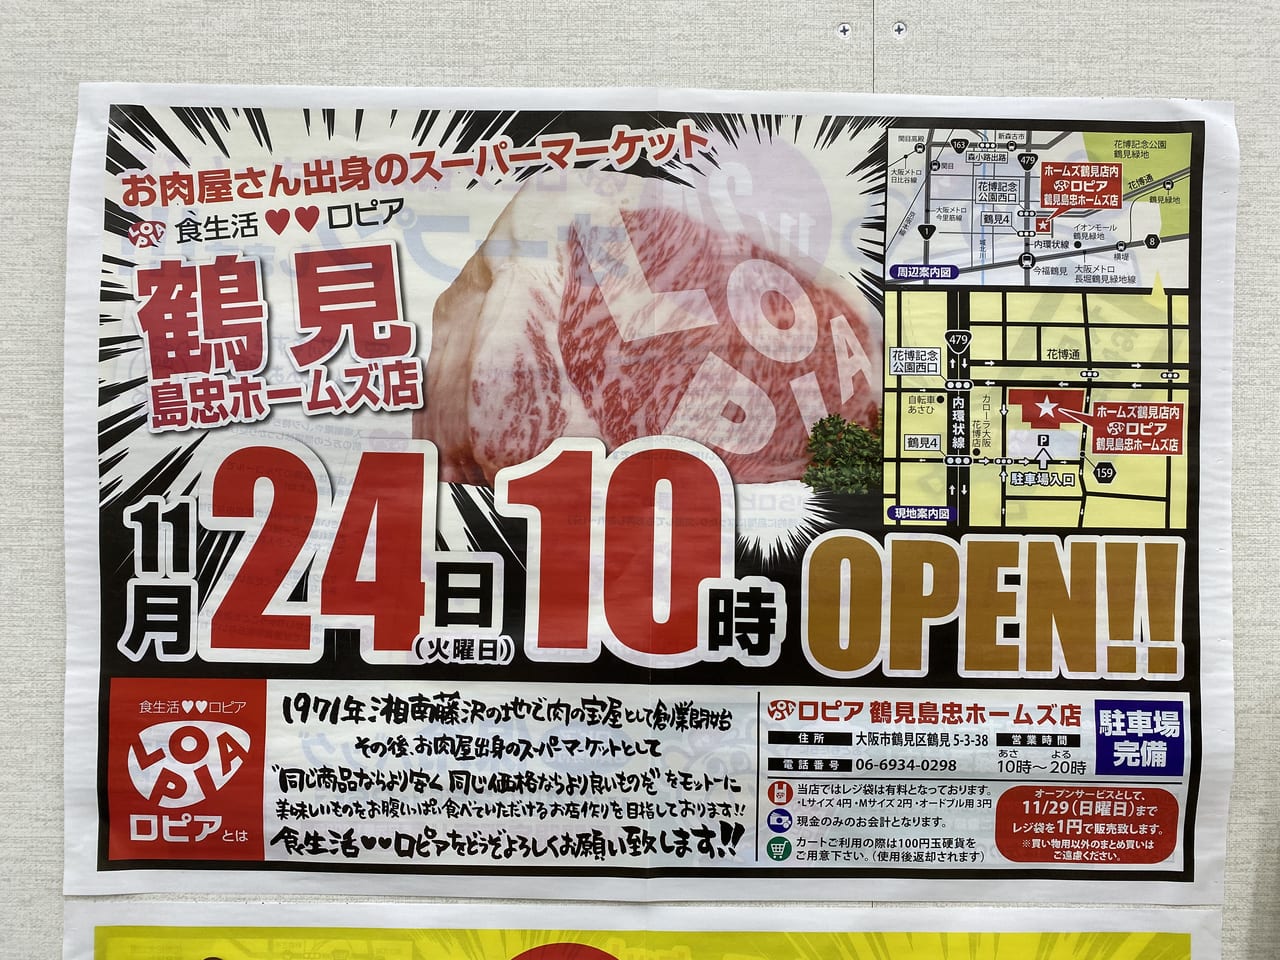 大阪市鶴見区 もうすぐですよ スーパーマーケット ロピア が11月24日 火 にいよいよオープンします 号外net 鶴見 城東